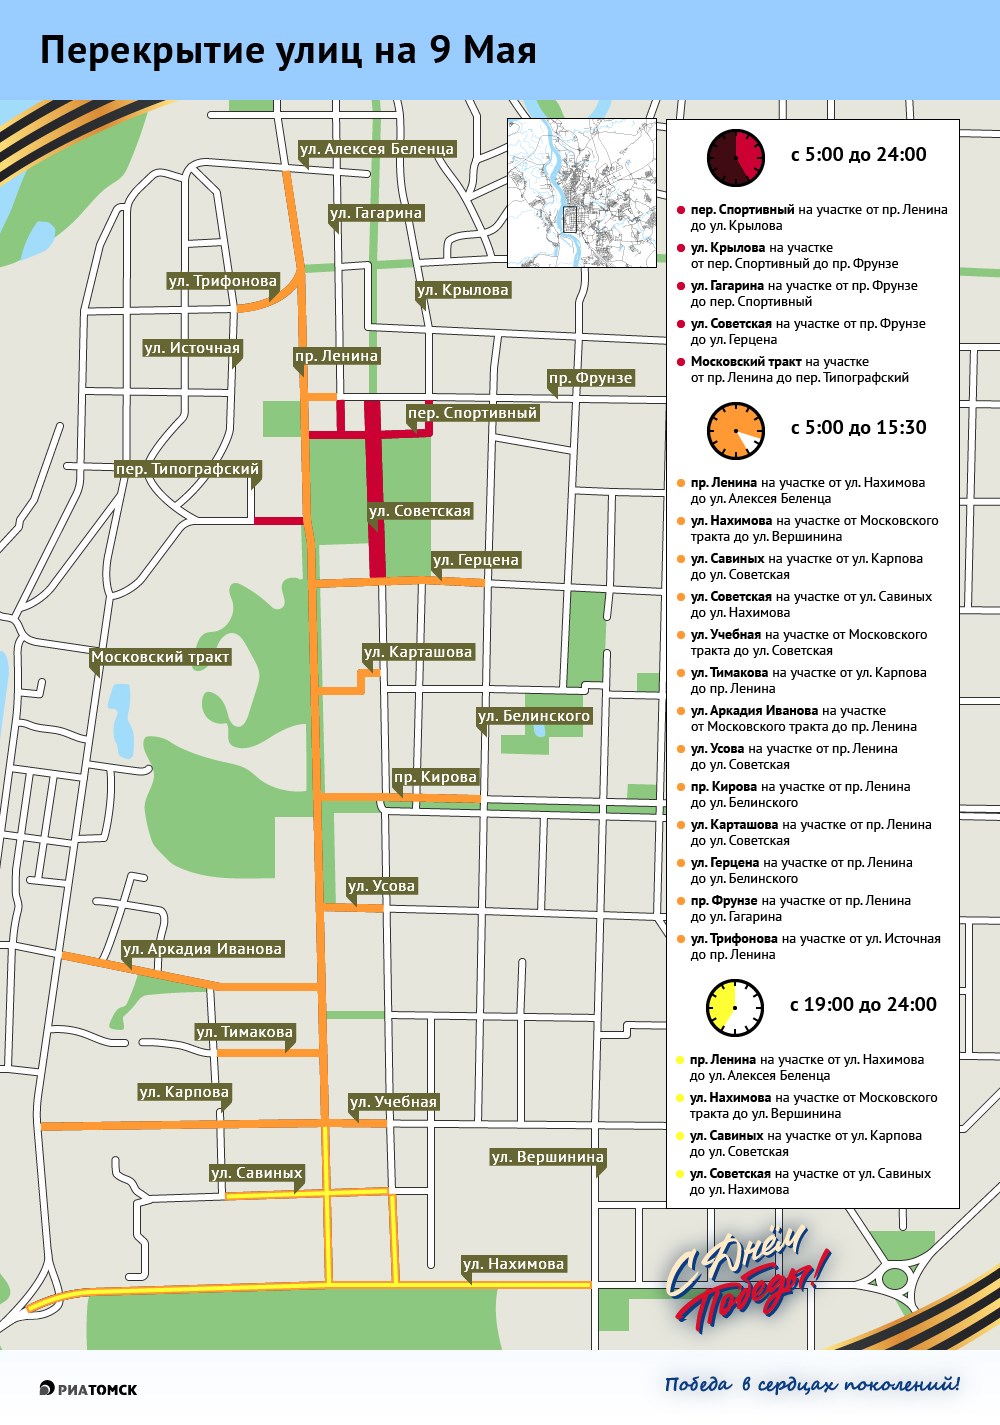 Какие улицы будут закрыты для автомобилей в Томске 9 мая. Карта